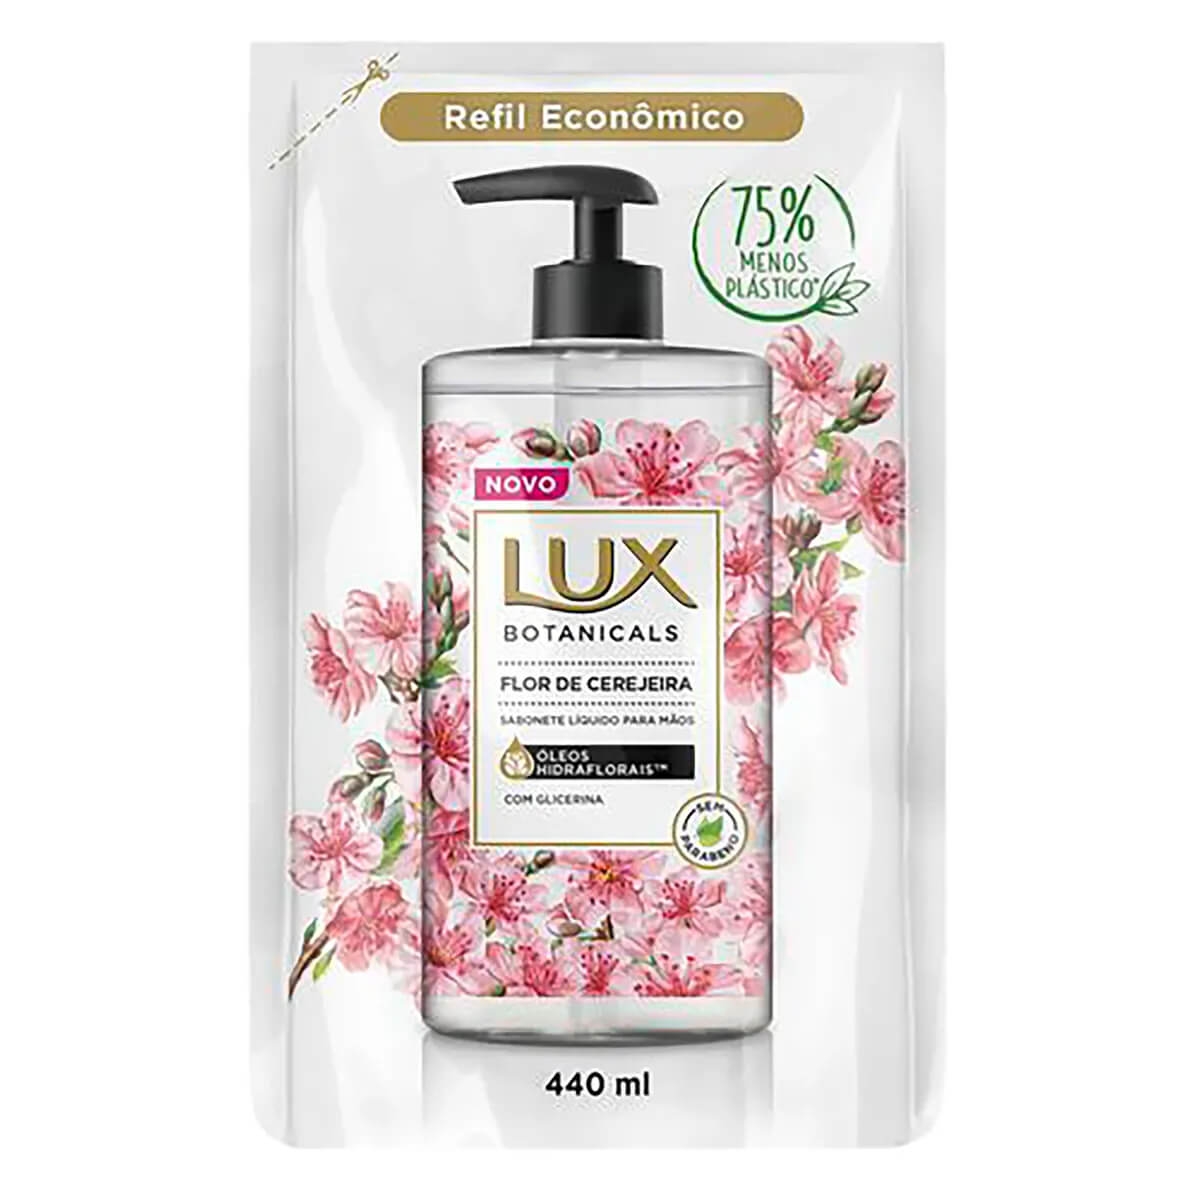 Refil Sabonete Líquido para Mãos Lux Botanicals Flor de Cerejeira 440ml